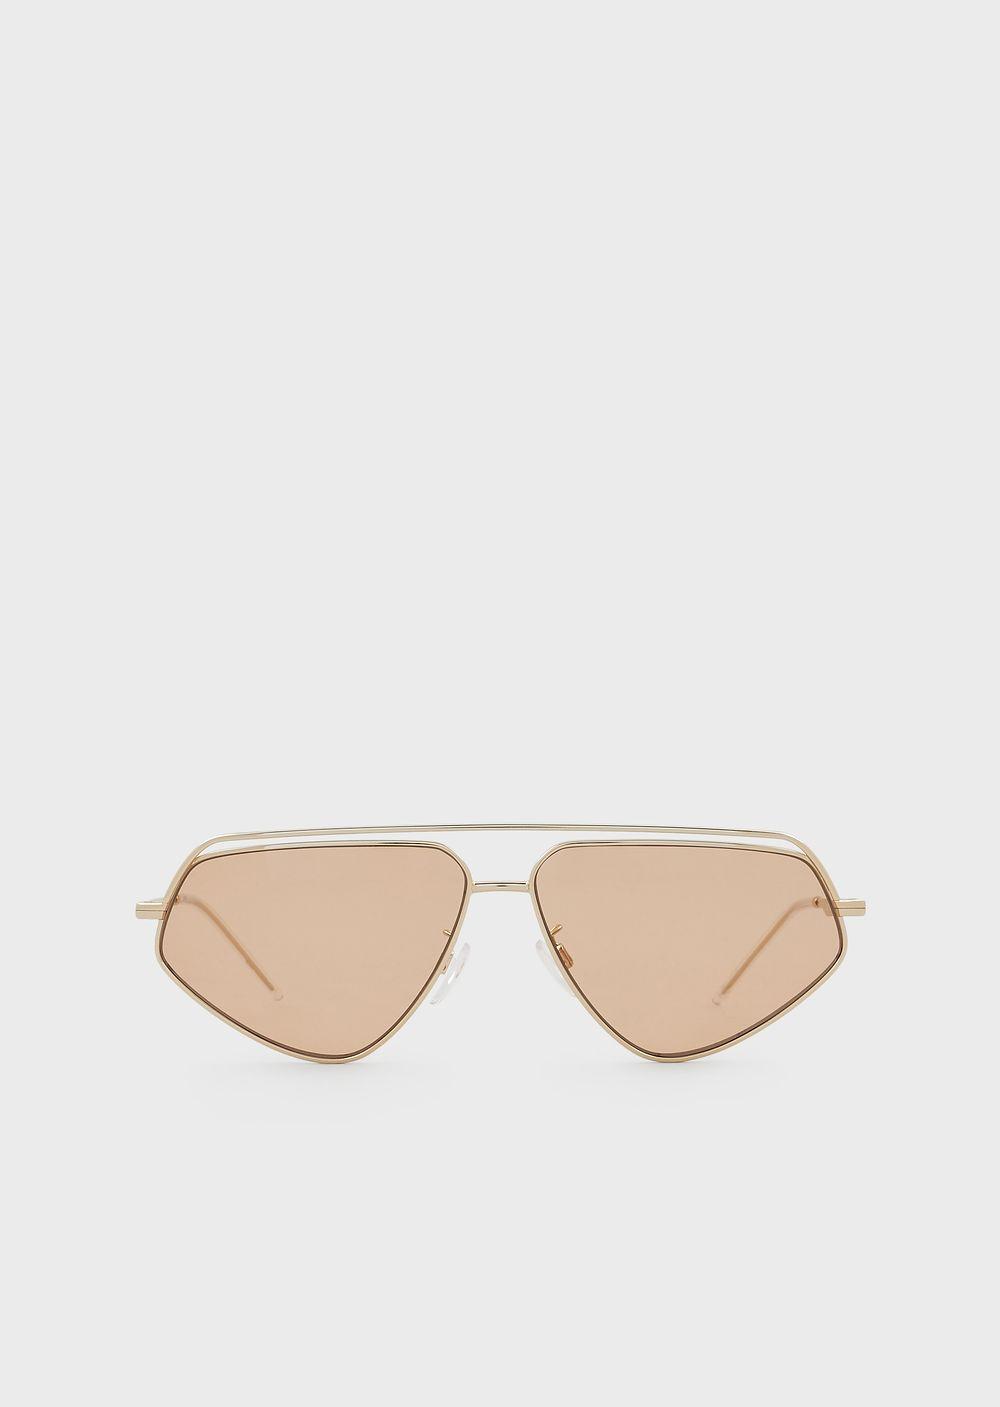 Emporio Armani Rubber Irregular-shaped Men's Sunglasses in Gold ...